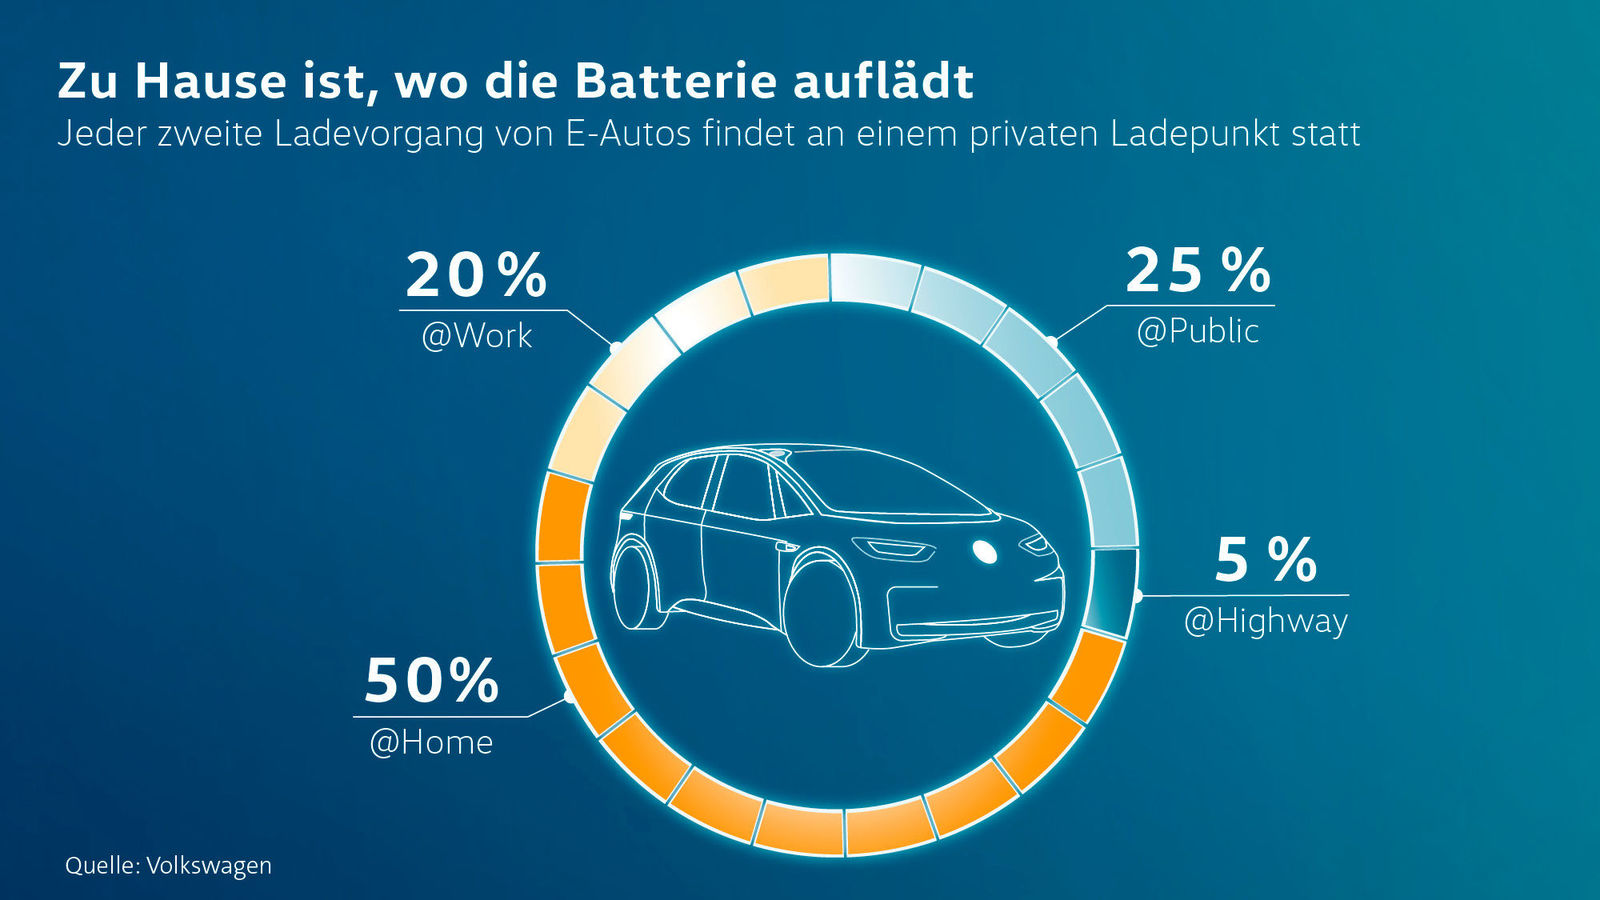 Volkswagen plant europaweit 36.000 Ladepunkte für E-Autos